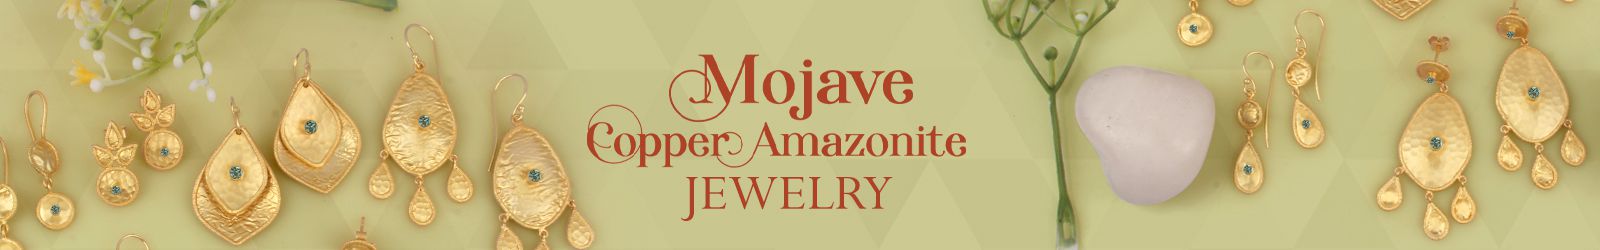 Silver Mojave Copper Amazonite Jewelry Wholesale Supplier